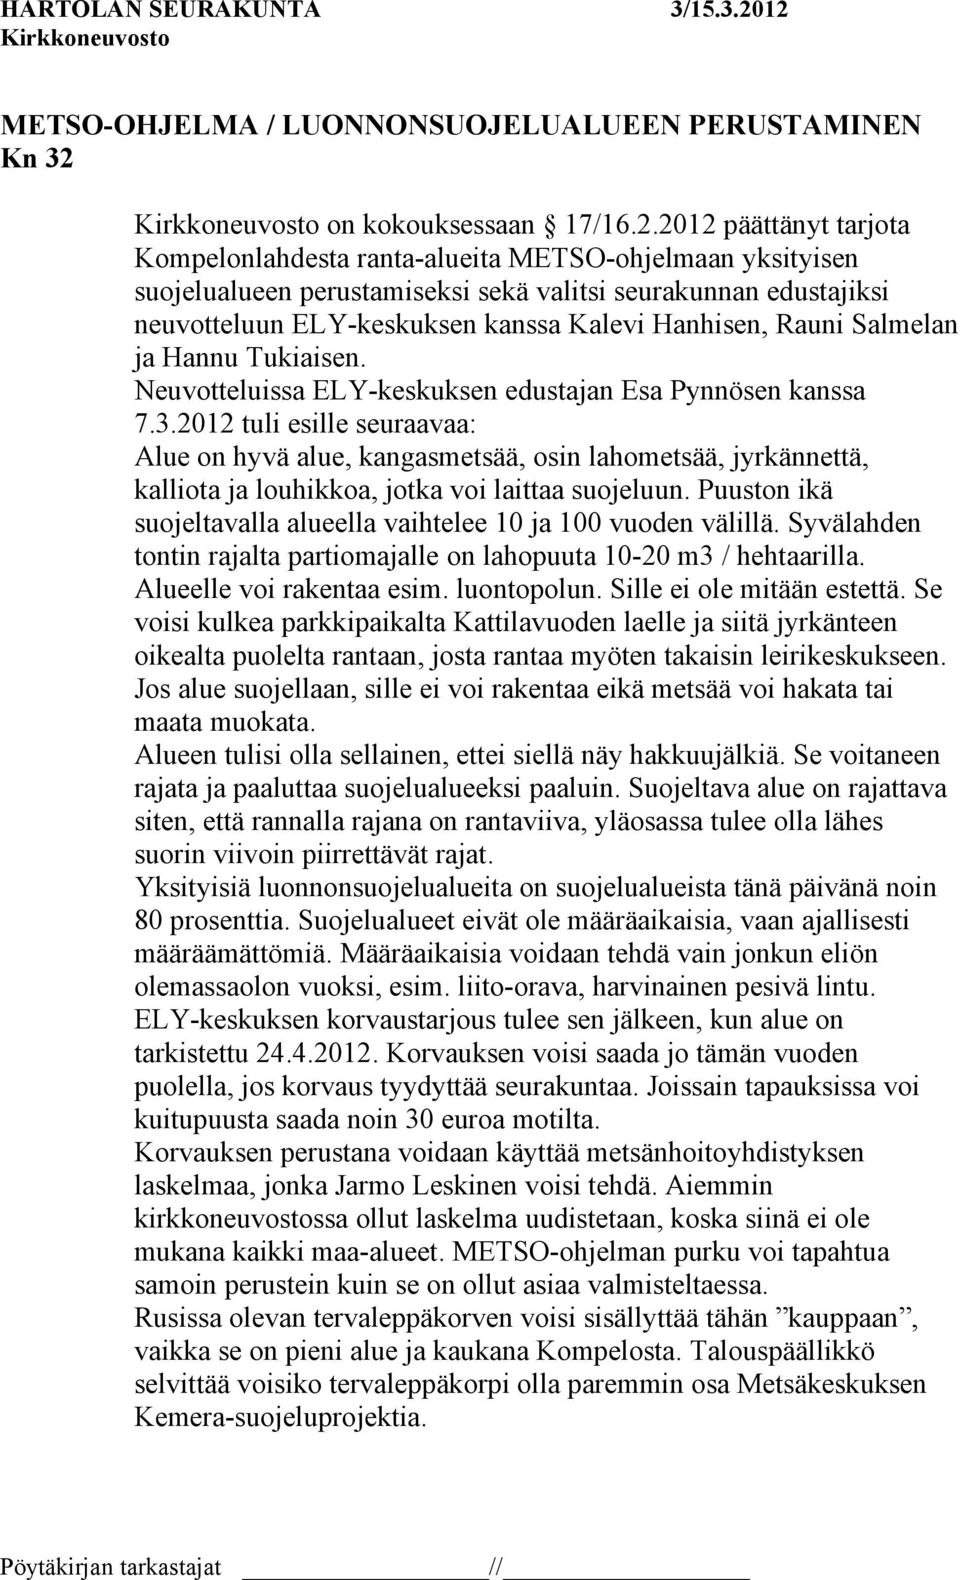 2012 päättänyt tarjota Kompelonlahdesta ranta-alueita METSO-ohjelmaan yksityisen suojelualueen perustamiseksi sekä valitsi seurakunnan edustajiksi neuvotteluun ELY-keskuksen kanssa Kalevi Hanhisen,